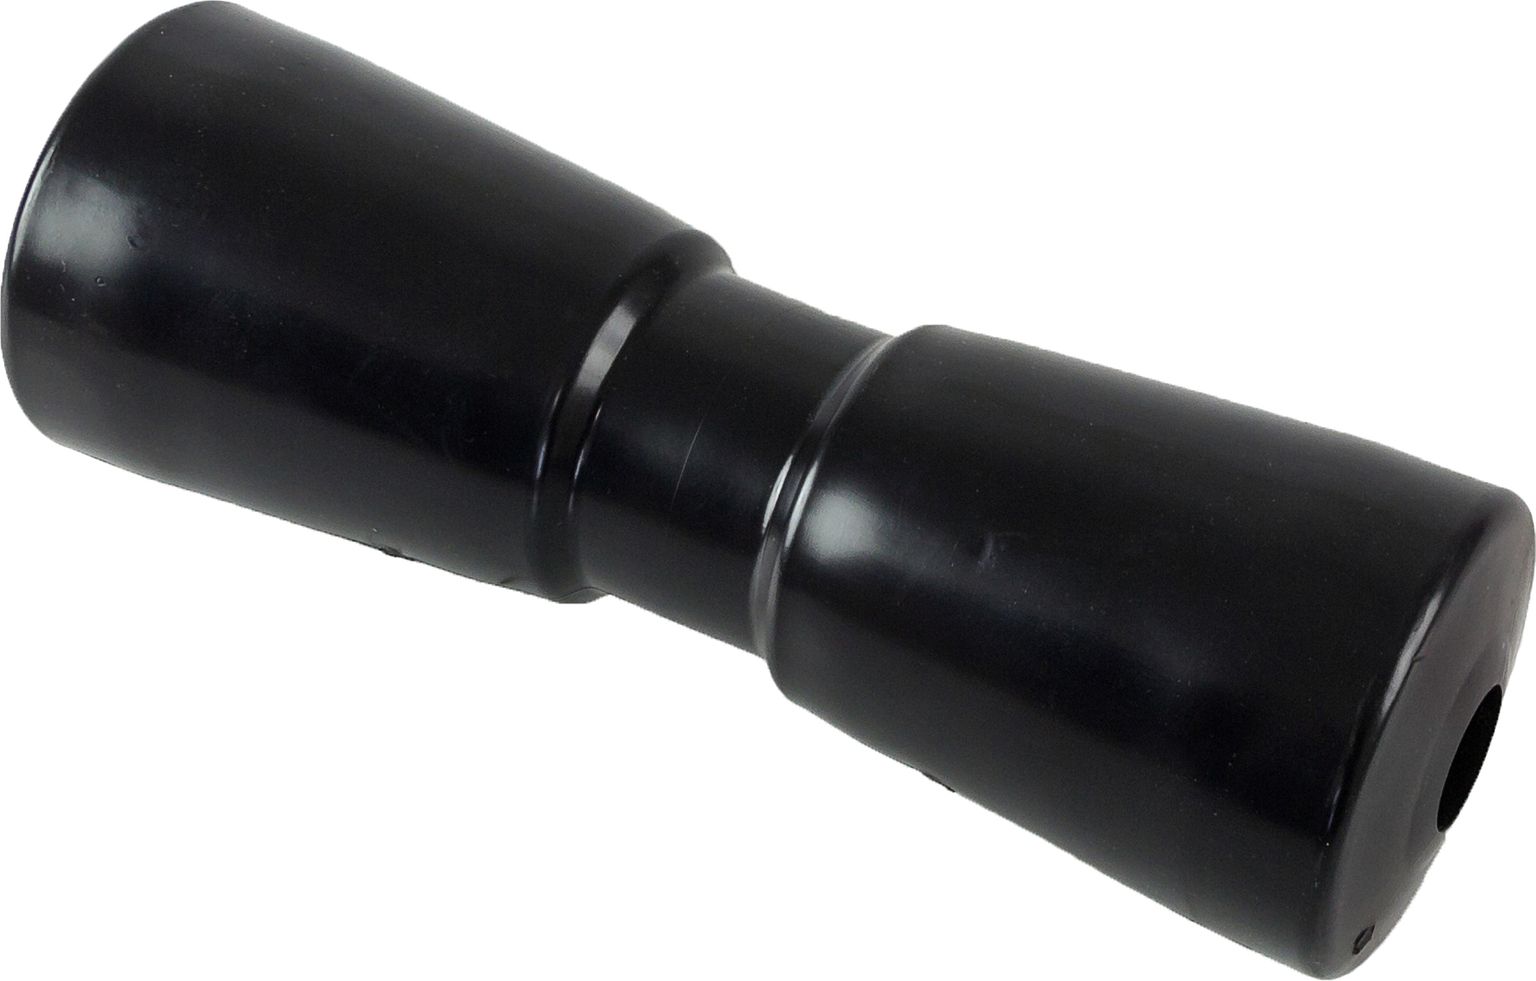 Ролик подкильный 250 мм, черный C11323B ролик для пресса 34 х 13 х 13 см цвет чёрный